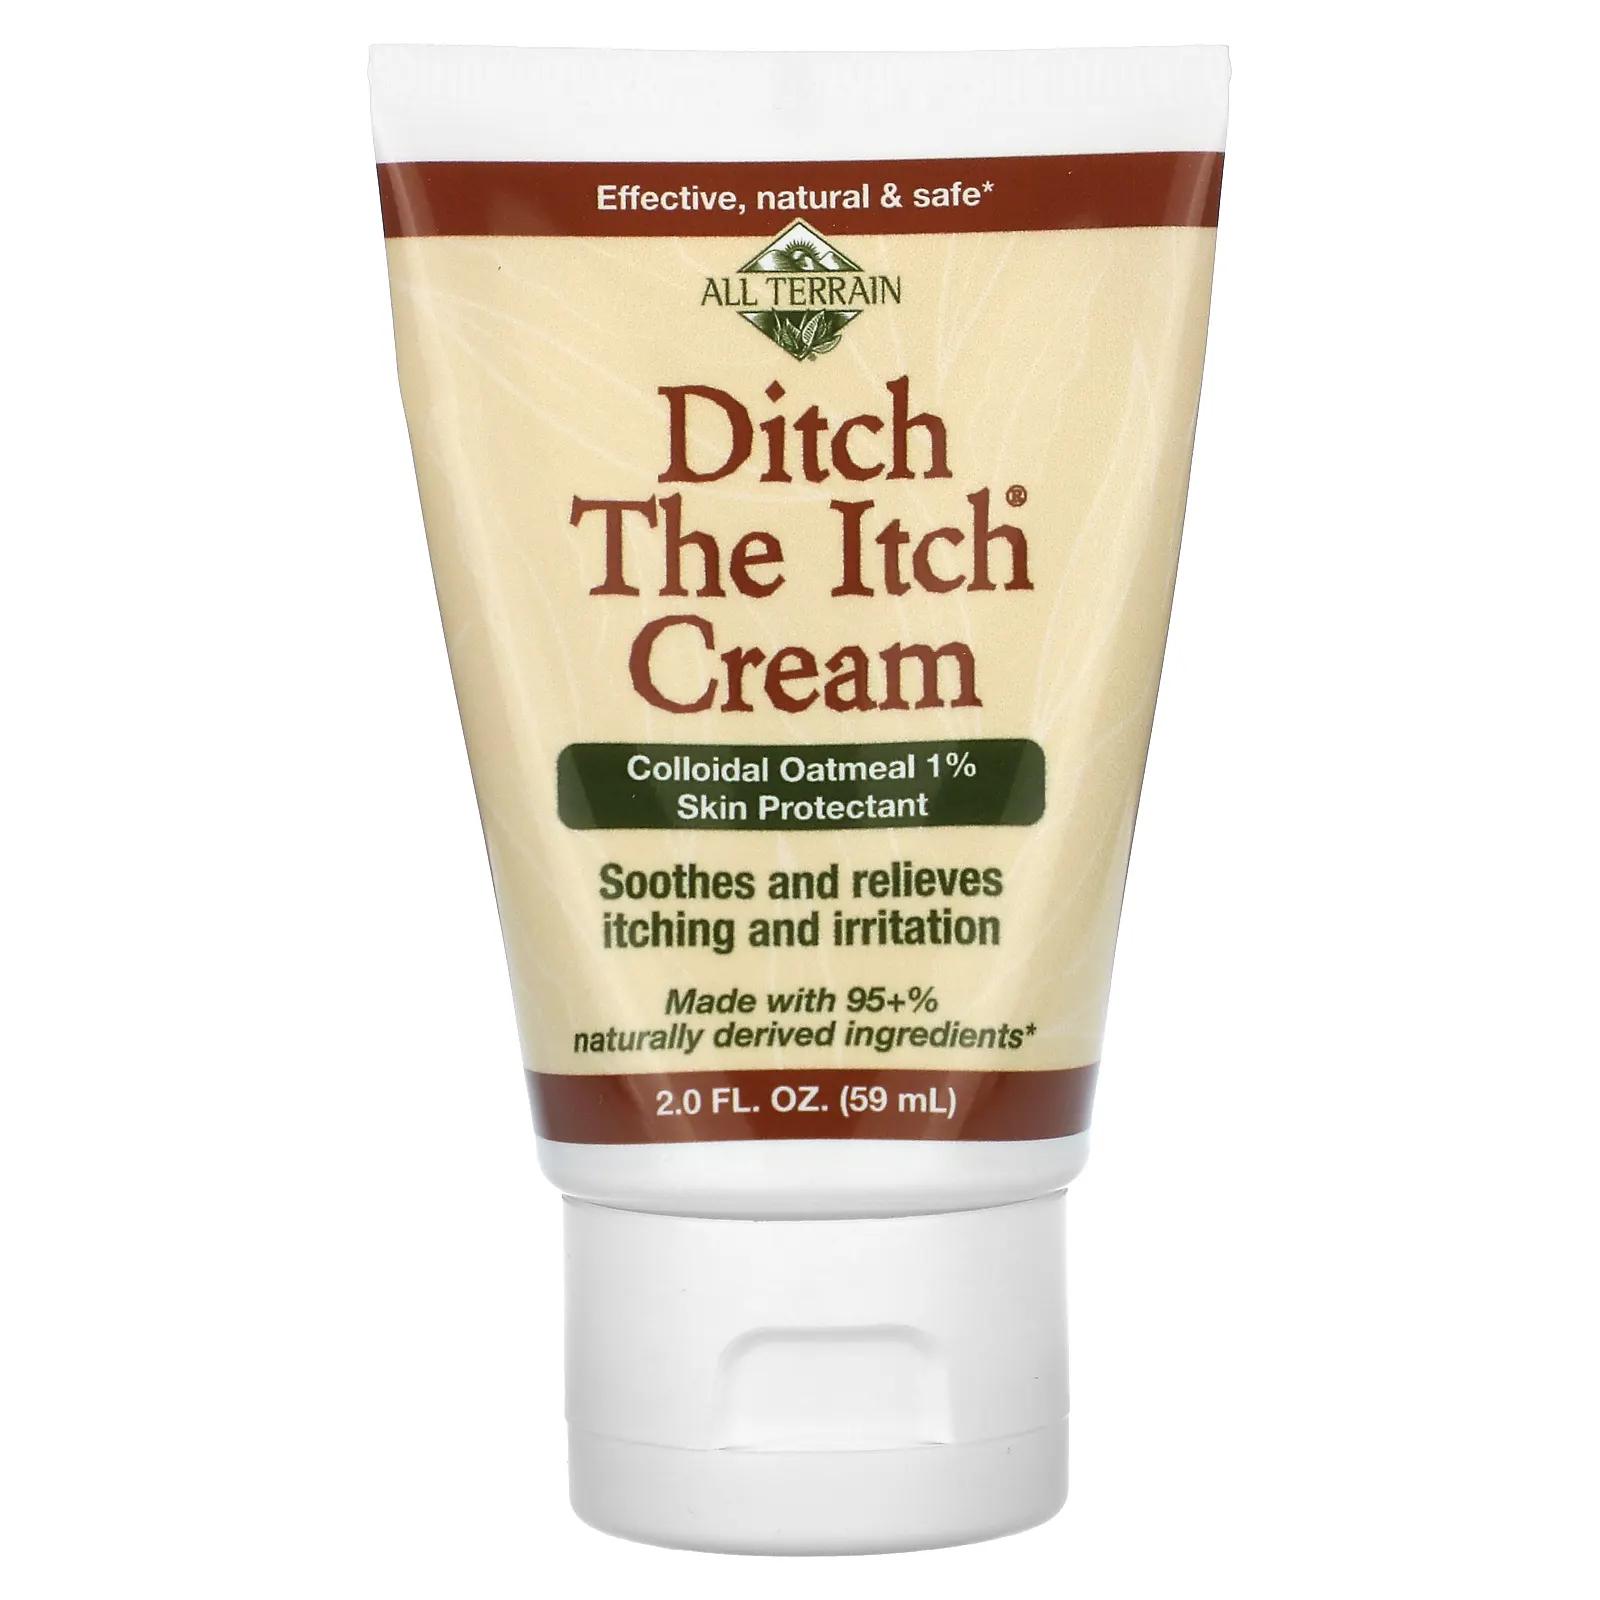 All Terrain Ditch The Itch Cream крем для защиты кожи с коллоидной овсянкой 1% 59 мл (2 жидк. унции) all terrain гель алоэ для облегчения кожи 5 жидких унций